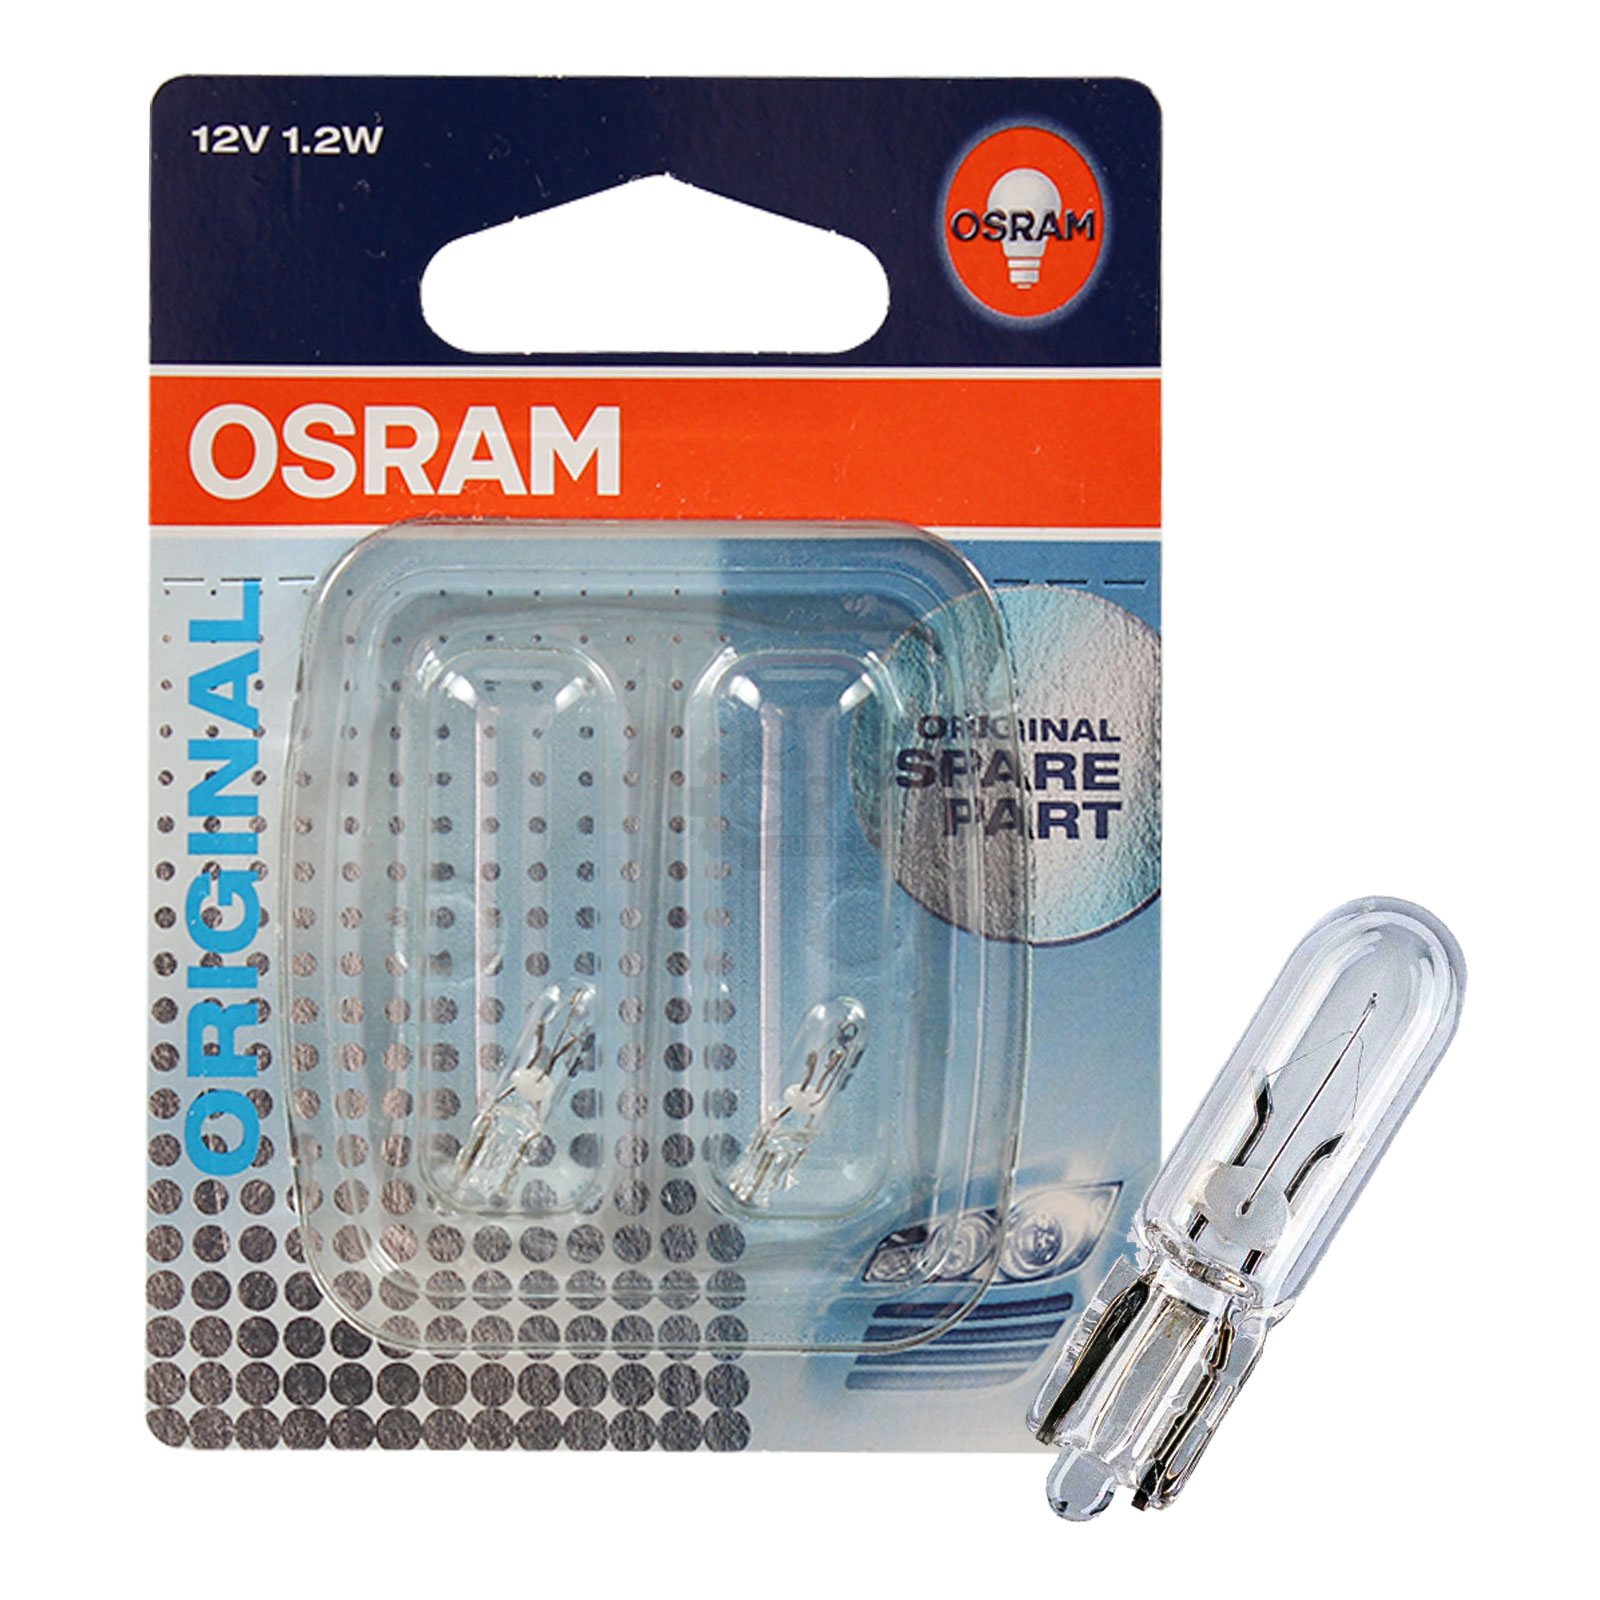 Osram 12V Lampe mit Glasquetschsockel 12V 1,2W Sockel W2x4.6d